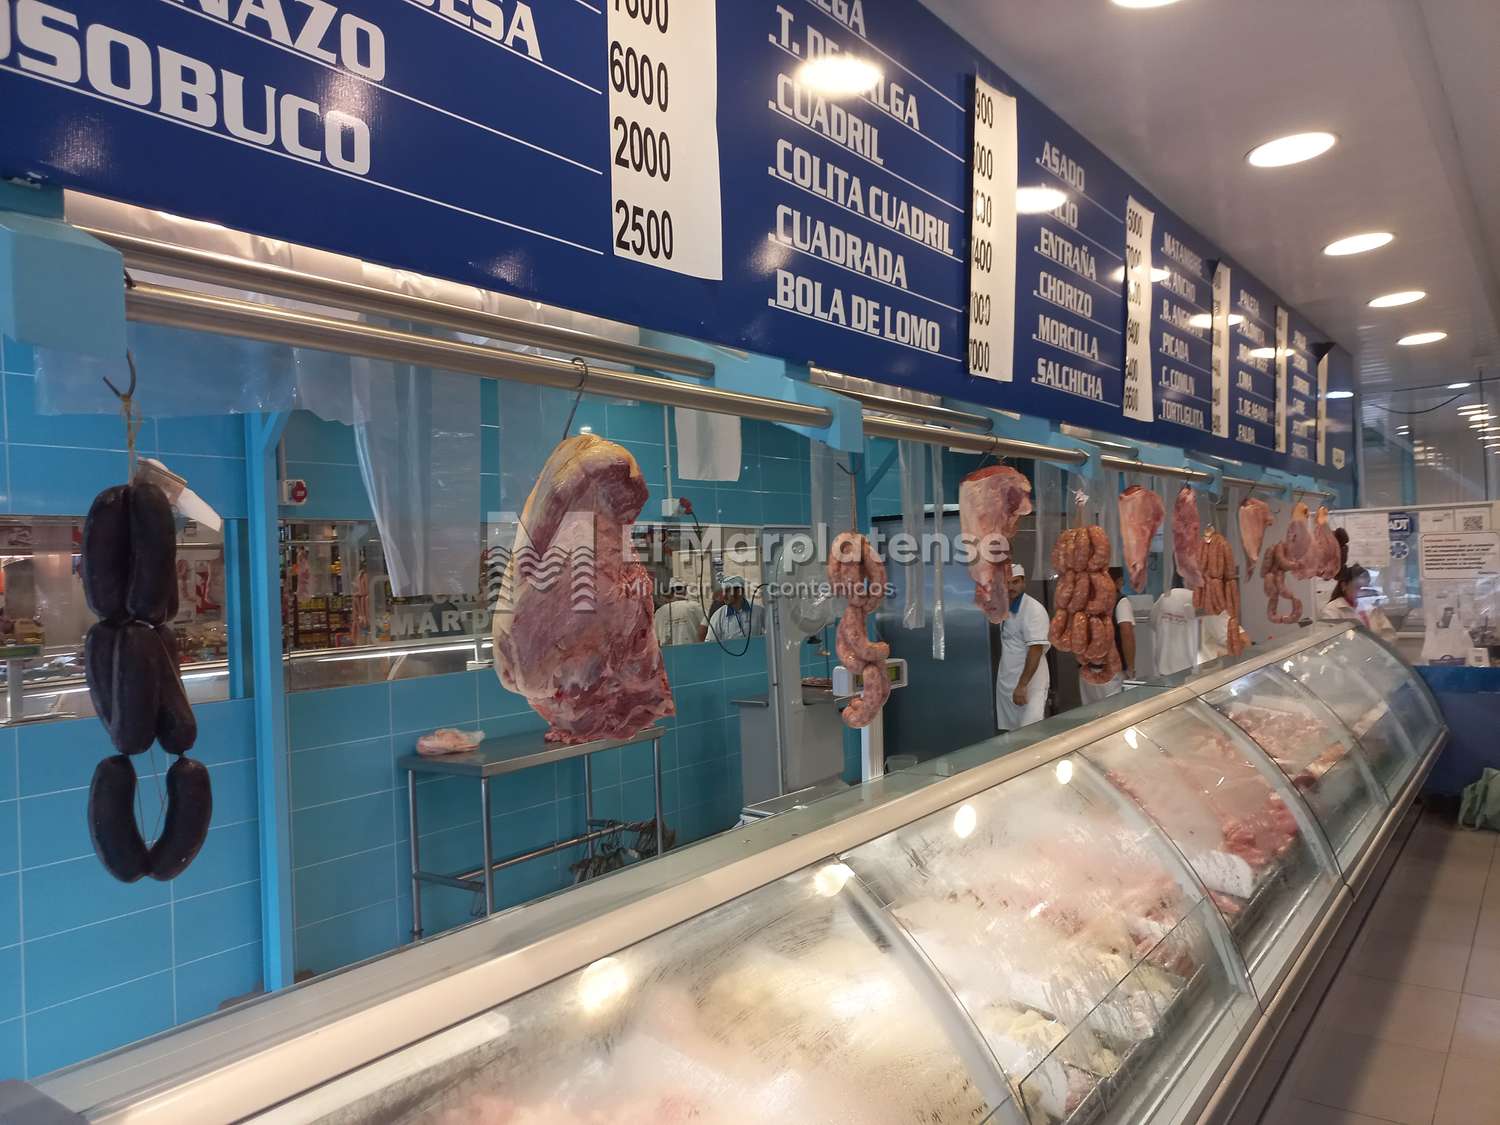 Ventas en carnicerías: "Con los descuentos de sábado, se llevan cuatro o cinco kilos de carne"